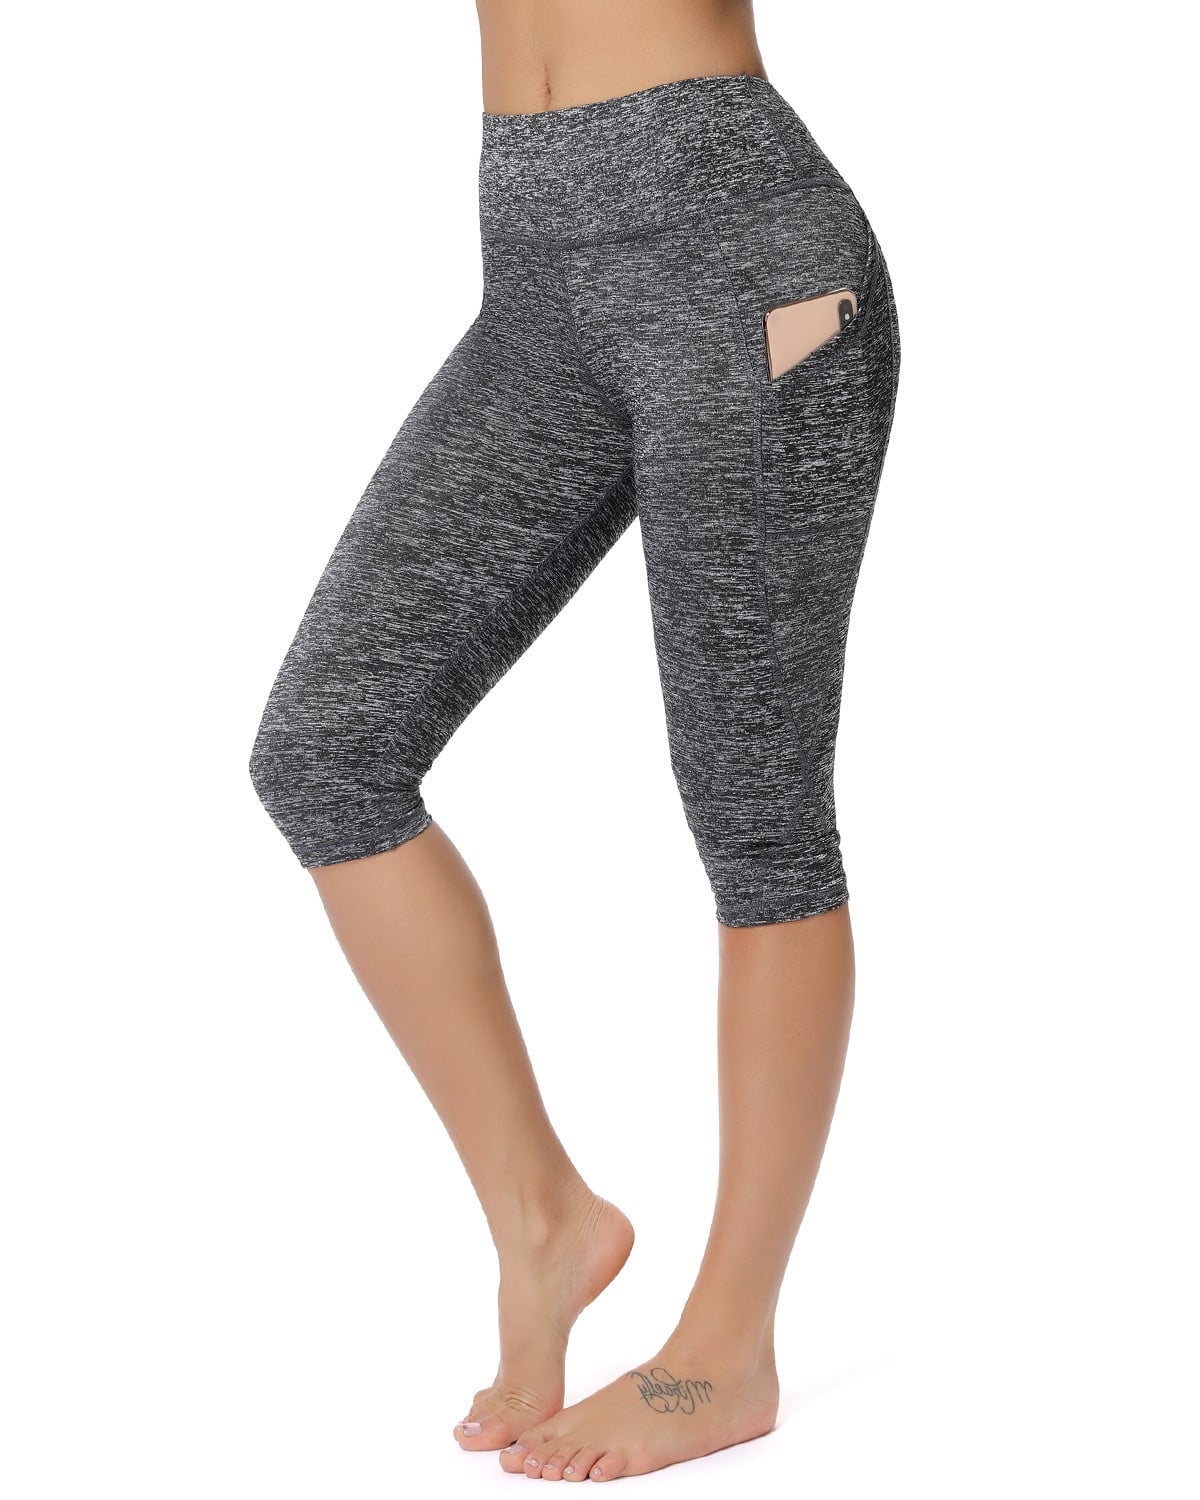 light gray yoga pants